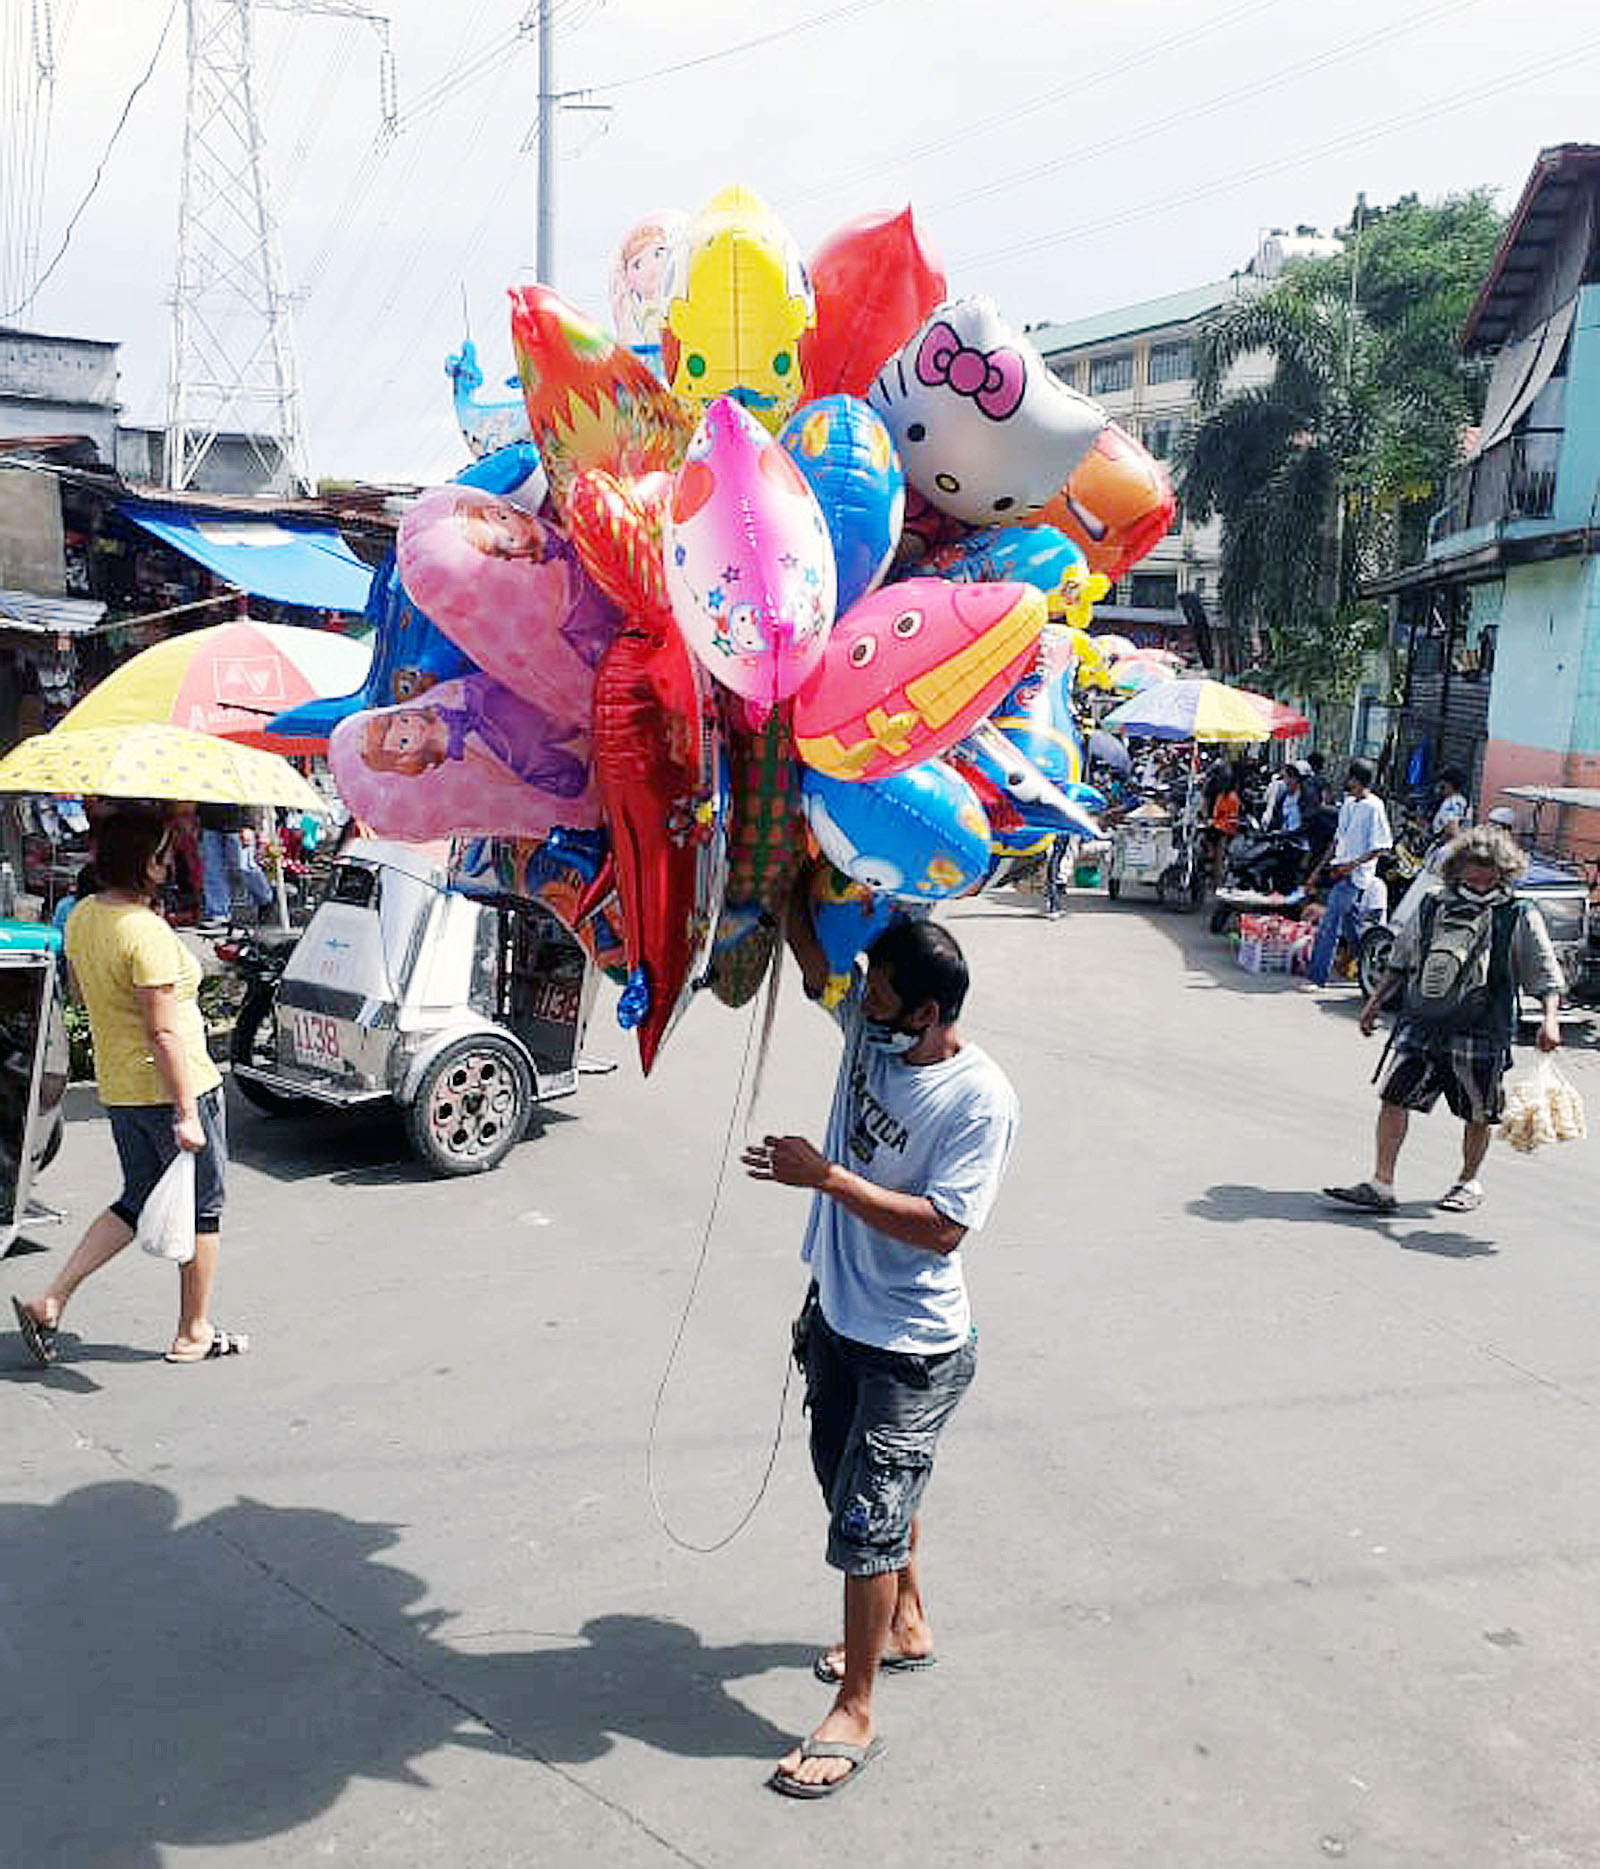 Balloon vendor